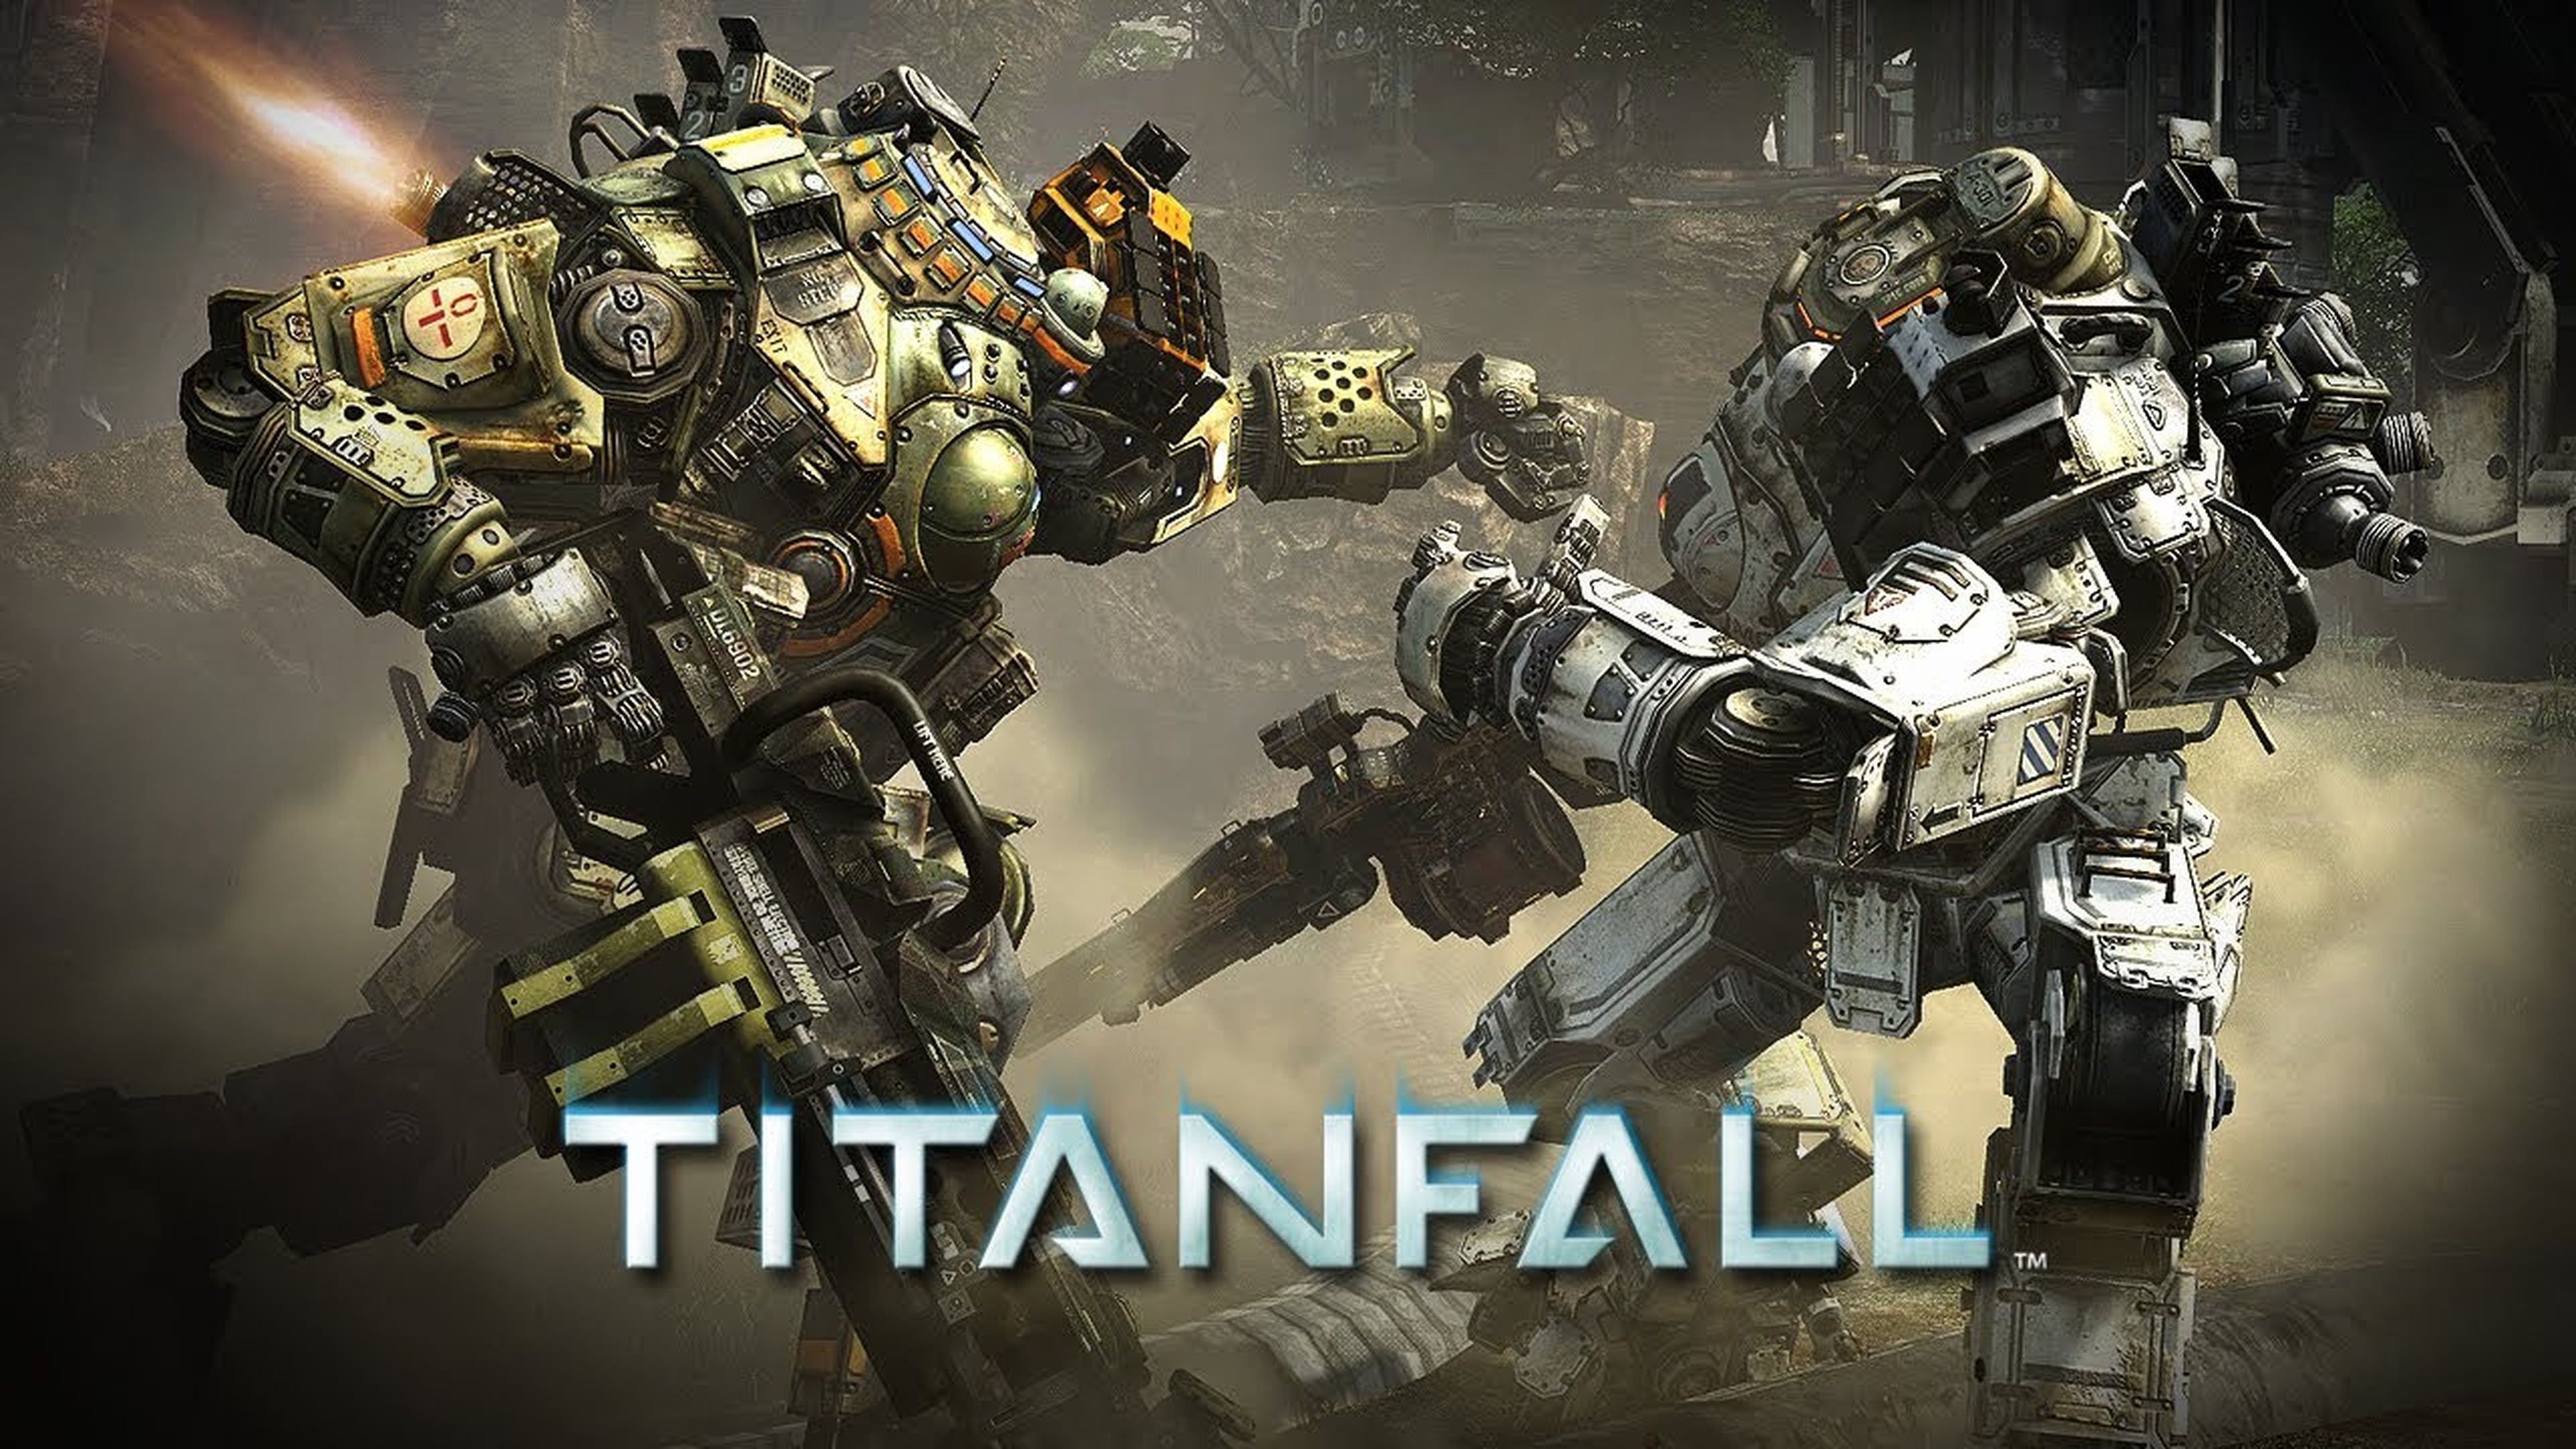 Retraso de Uncharted 4, Titanfall 2 multiplataforma... ¡Las noticias de la semana!